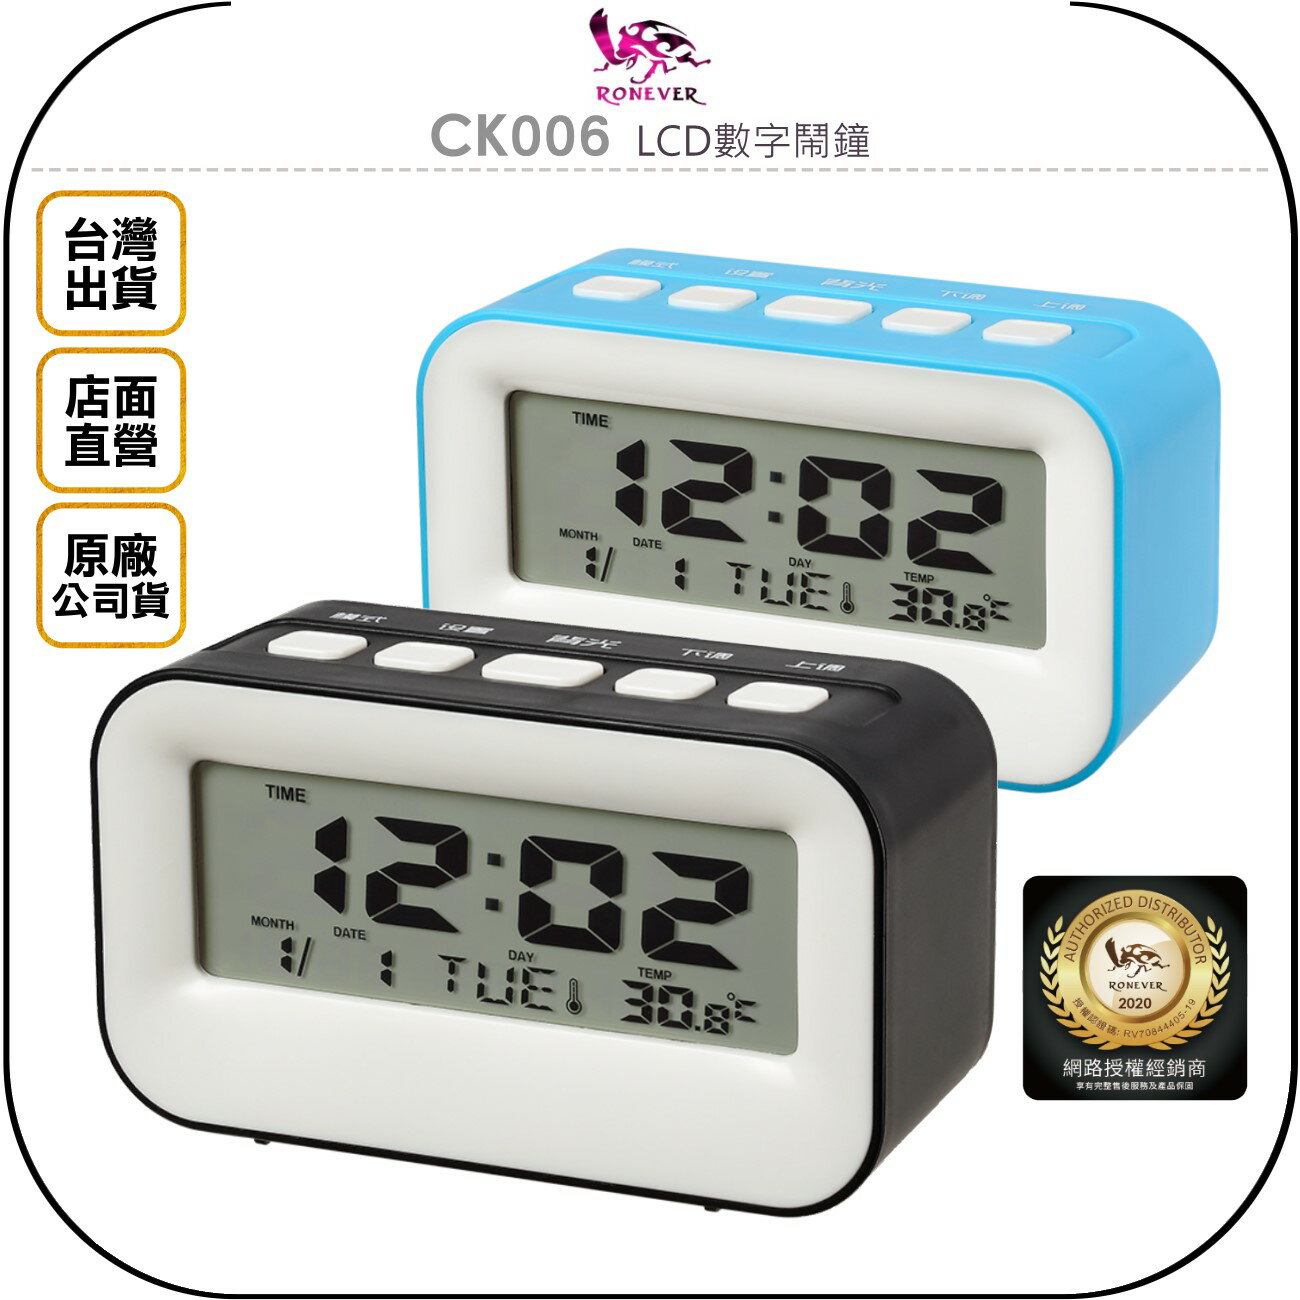 《飛翔無線3C》RONEVER 向聯 CK006 LCD數字鬧鐘◉公司貨◉床頭擺鐘◉觸控語音◉溫度日期◉鬧鈴選擇